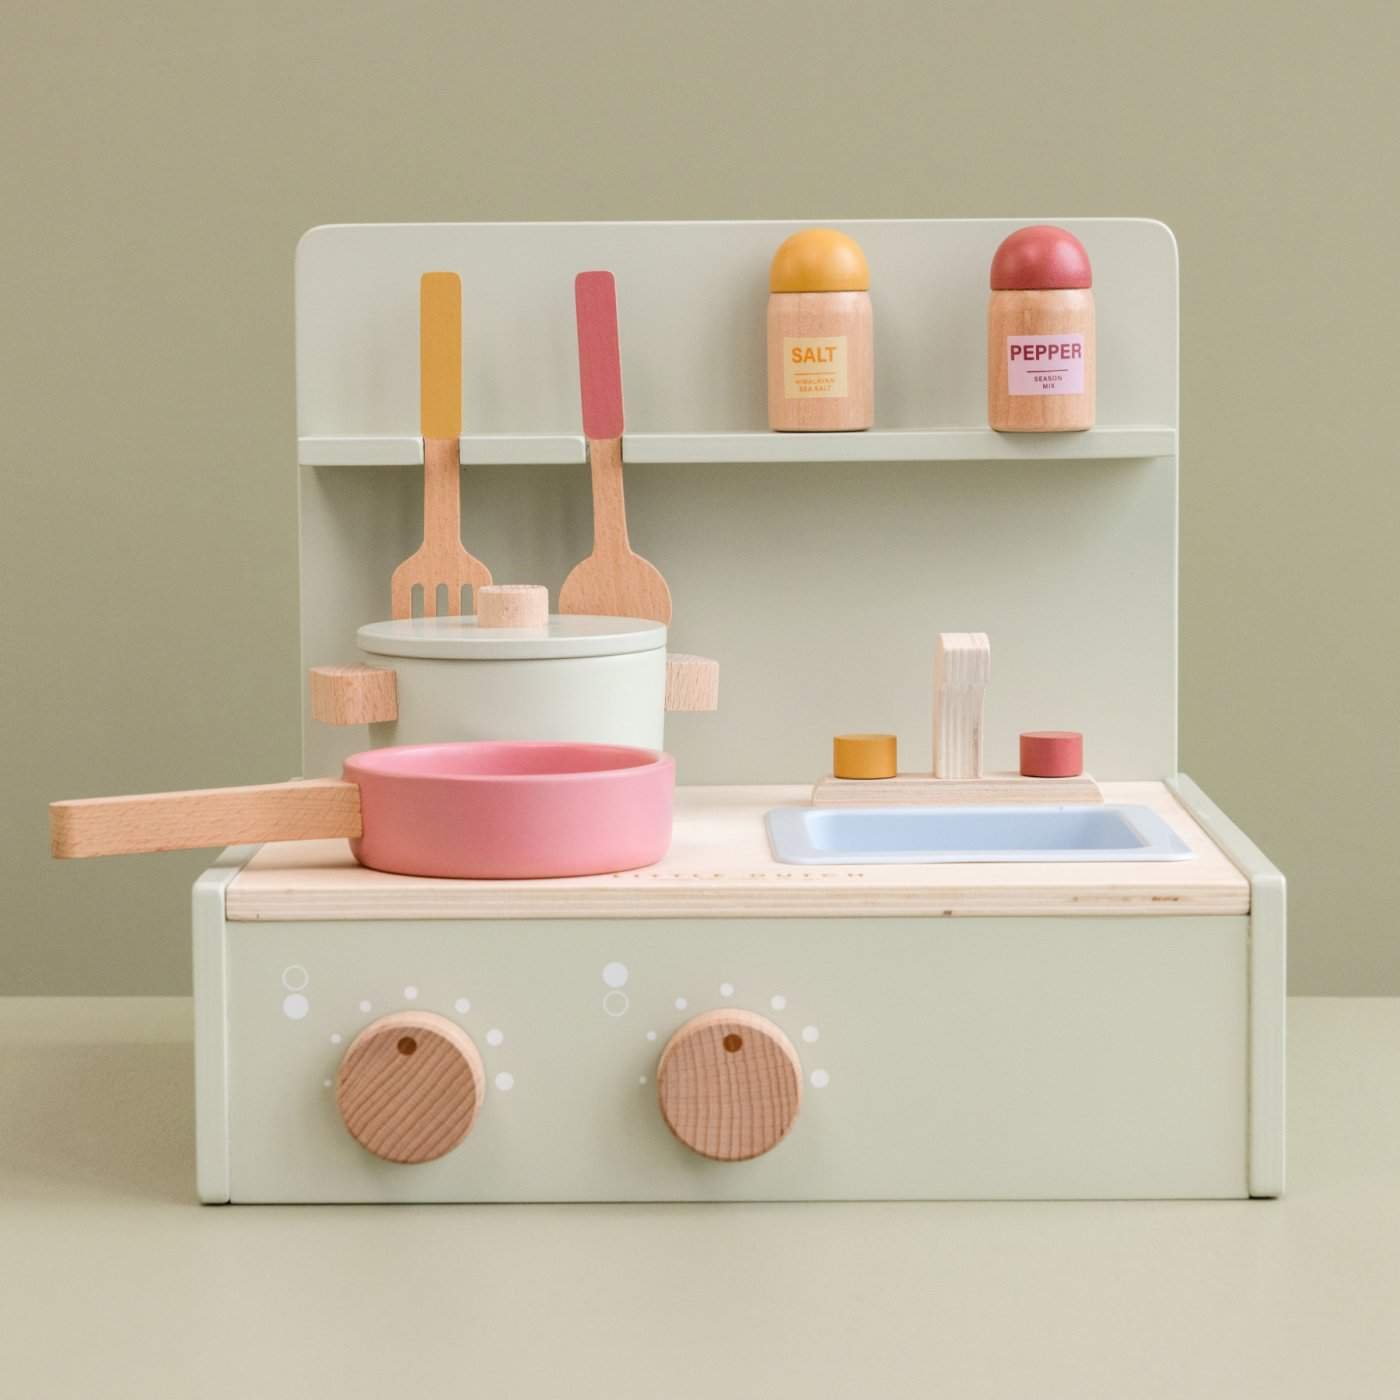 Idei de cadouri pentru fetita de 3 ani creative si interactive- mini bucatarie de lemn-min